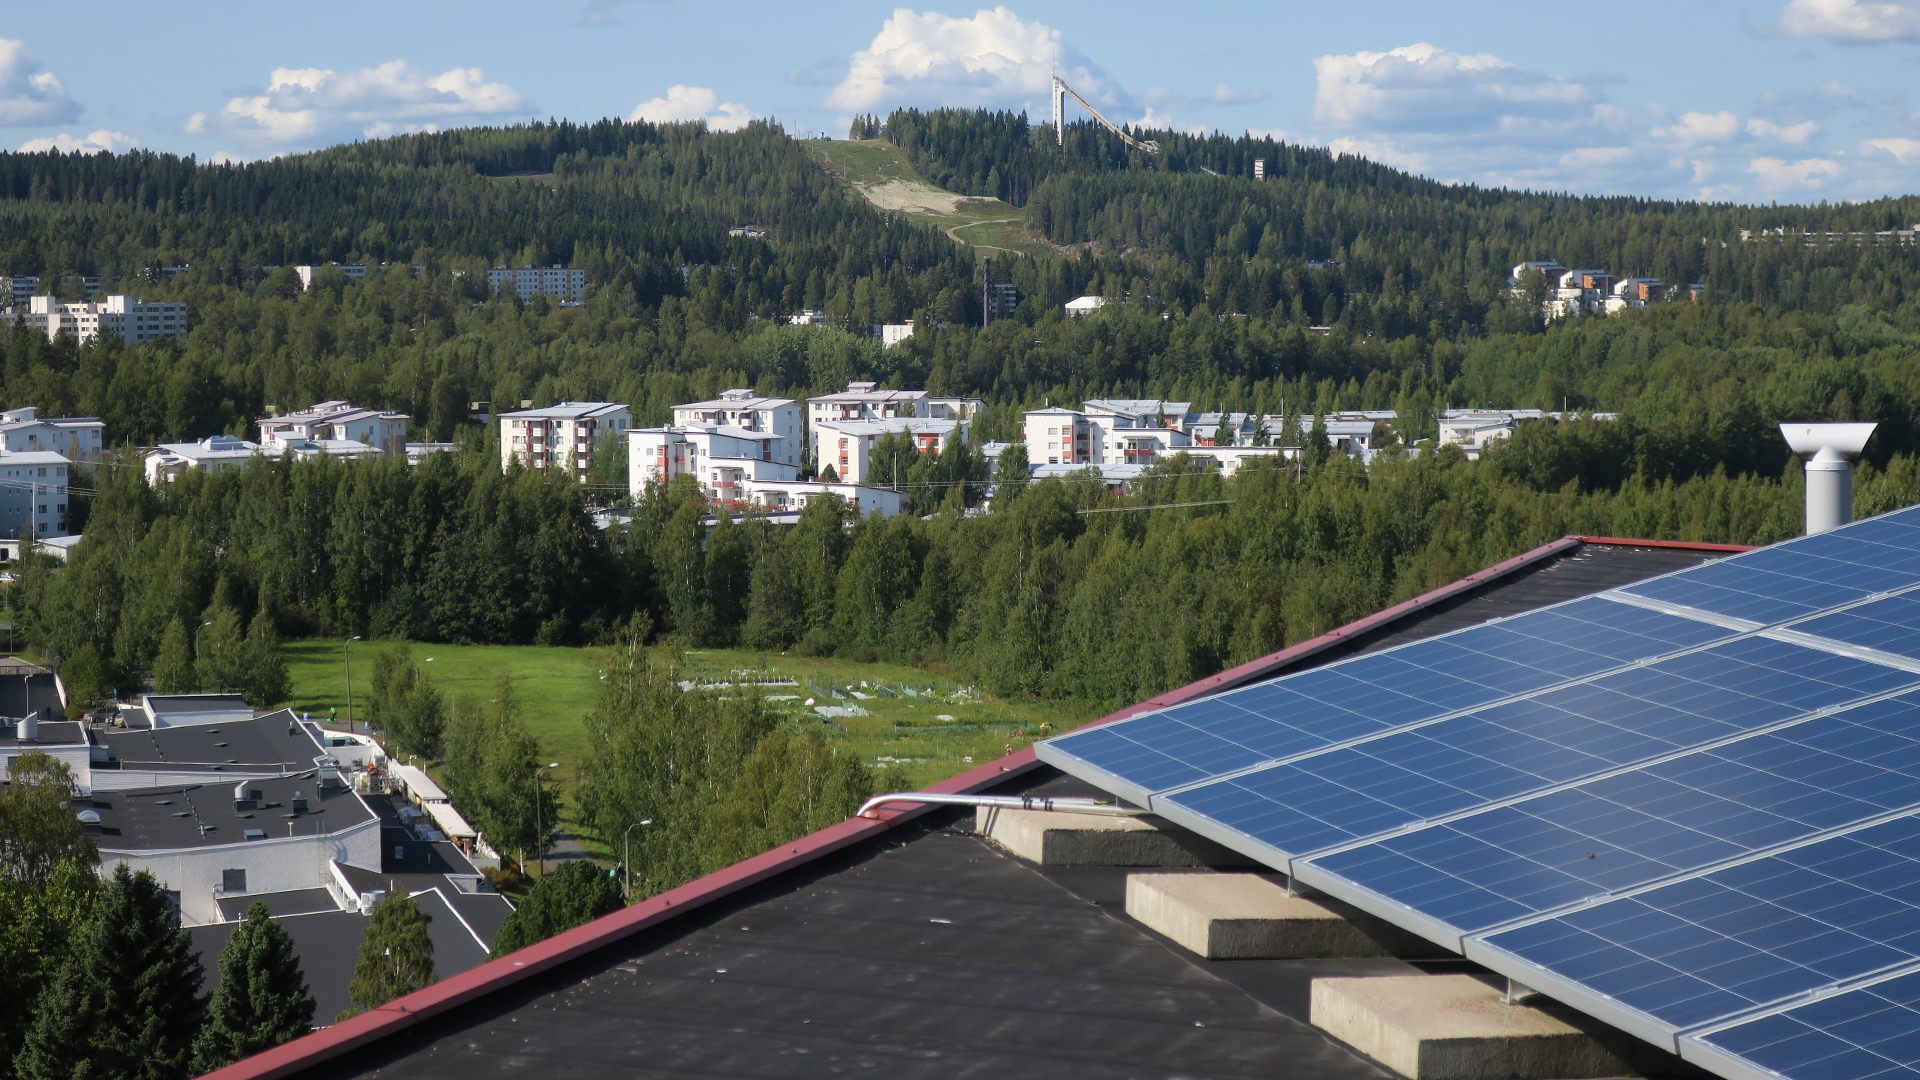 Wachsende Nachfrage nach Solarmodulen trotz langer Erwartungen und höherer Preise